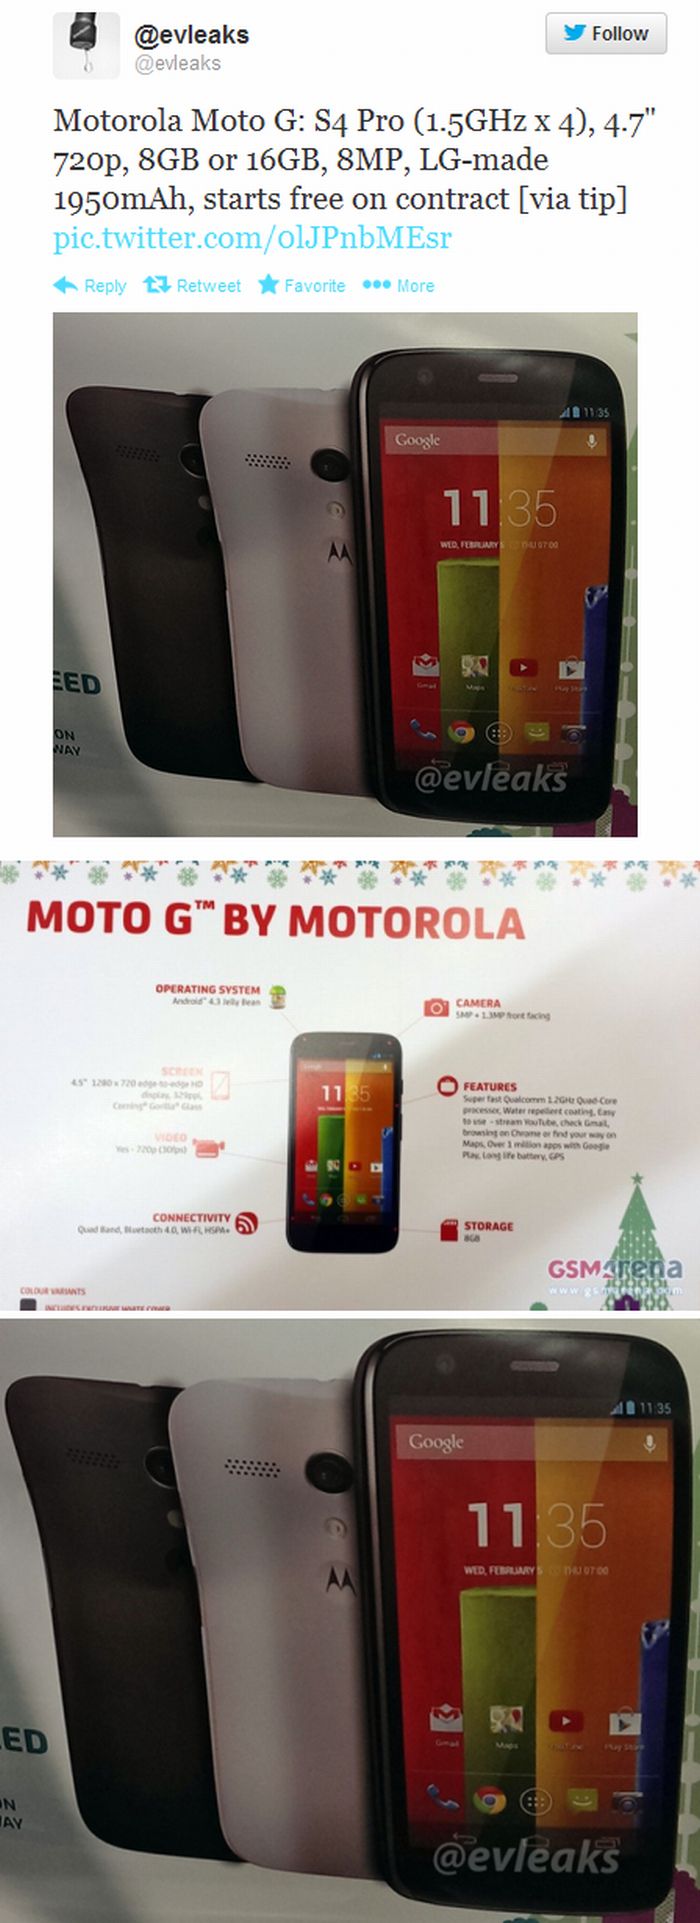 Olcsó lesz a Motorola Moto G